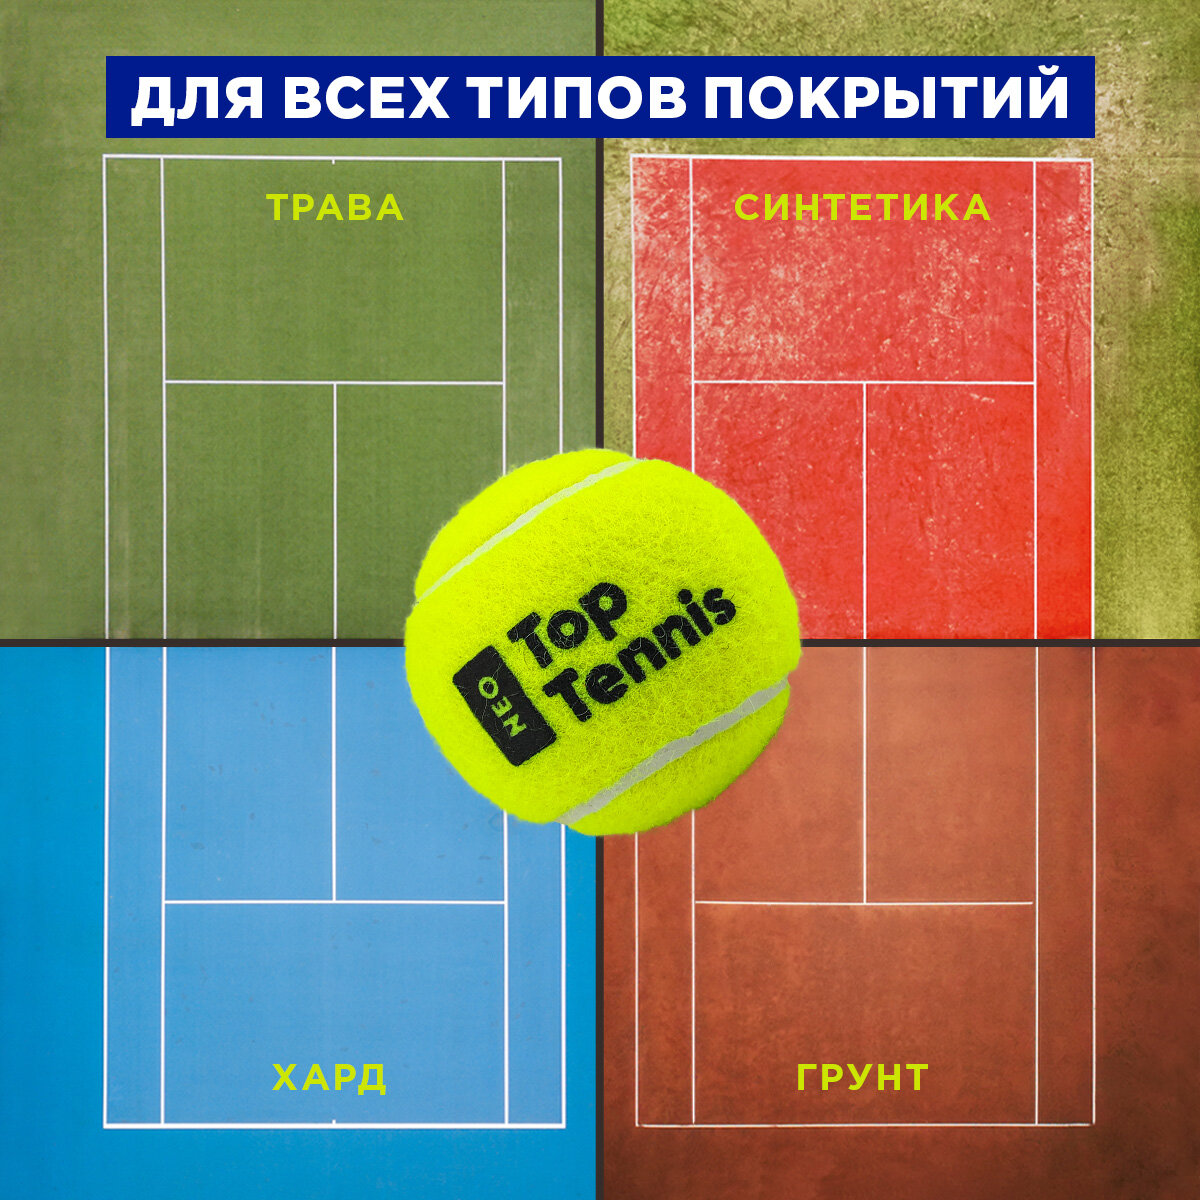 Теннисный мяч для большого тенниса профессиональный Top Tennis tbneo3 - 3 шт в в упаковке.